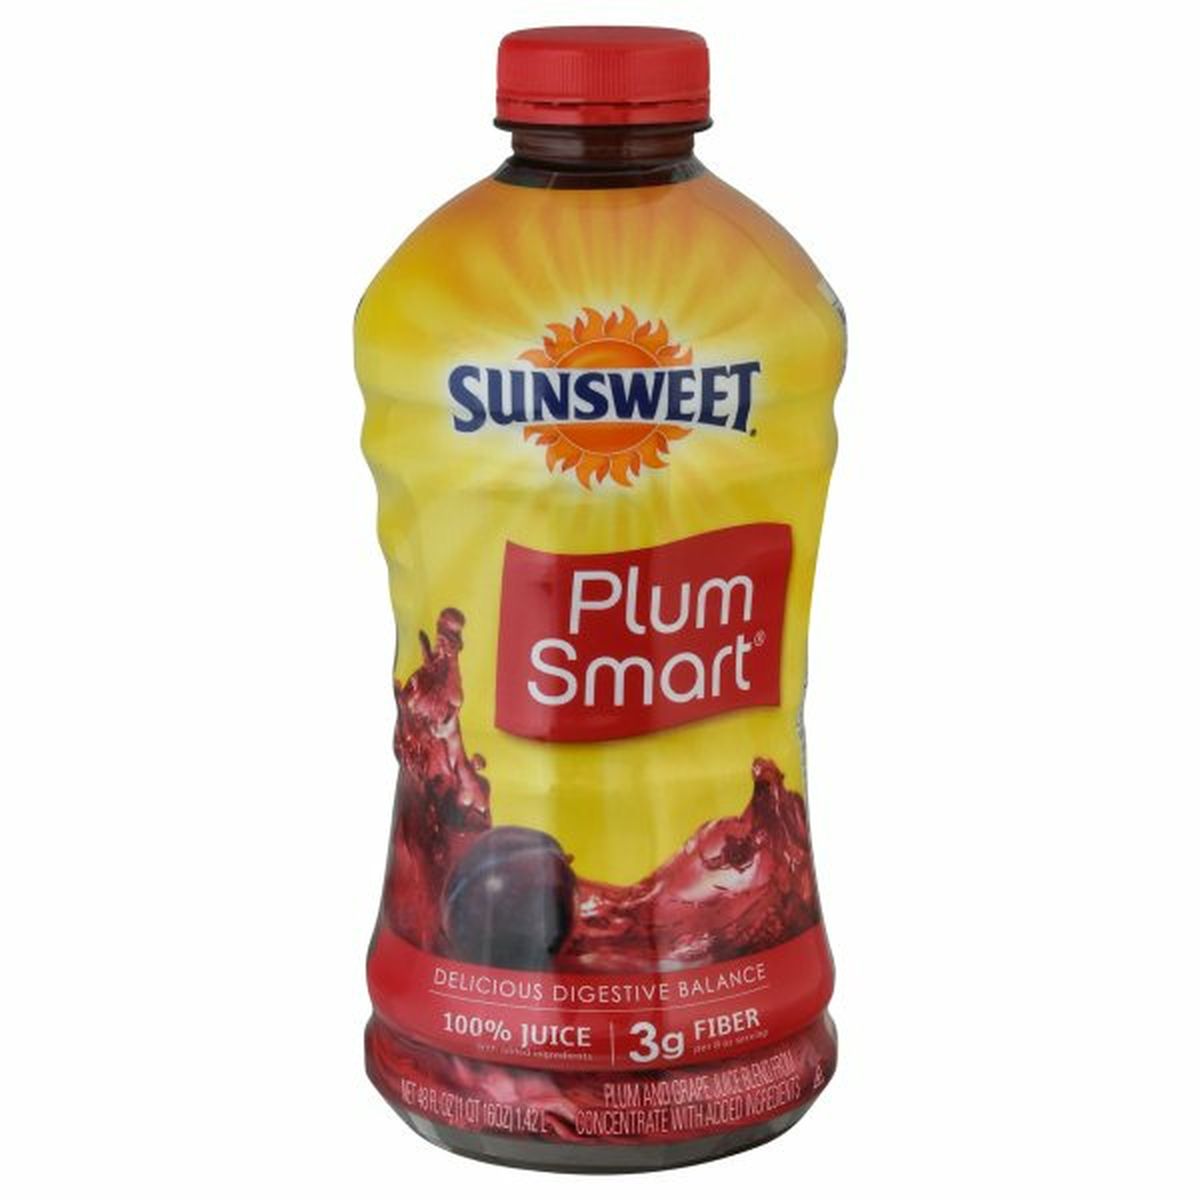 Calories in Sunsweet Plum Smart 100% Juice, Plum & Grape